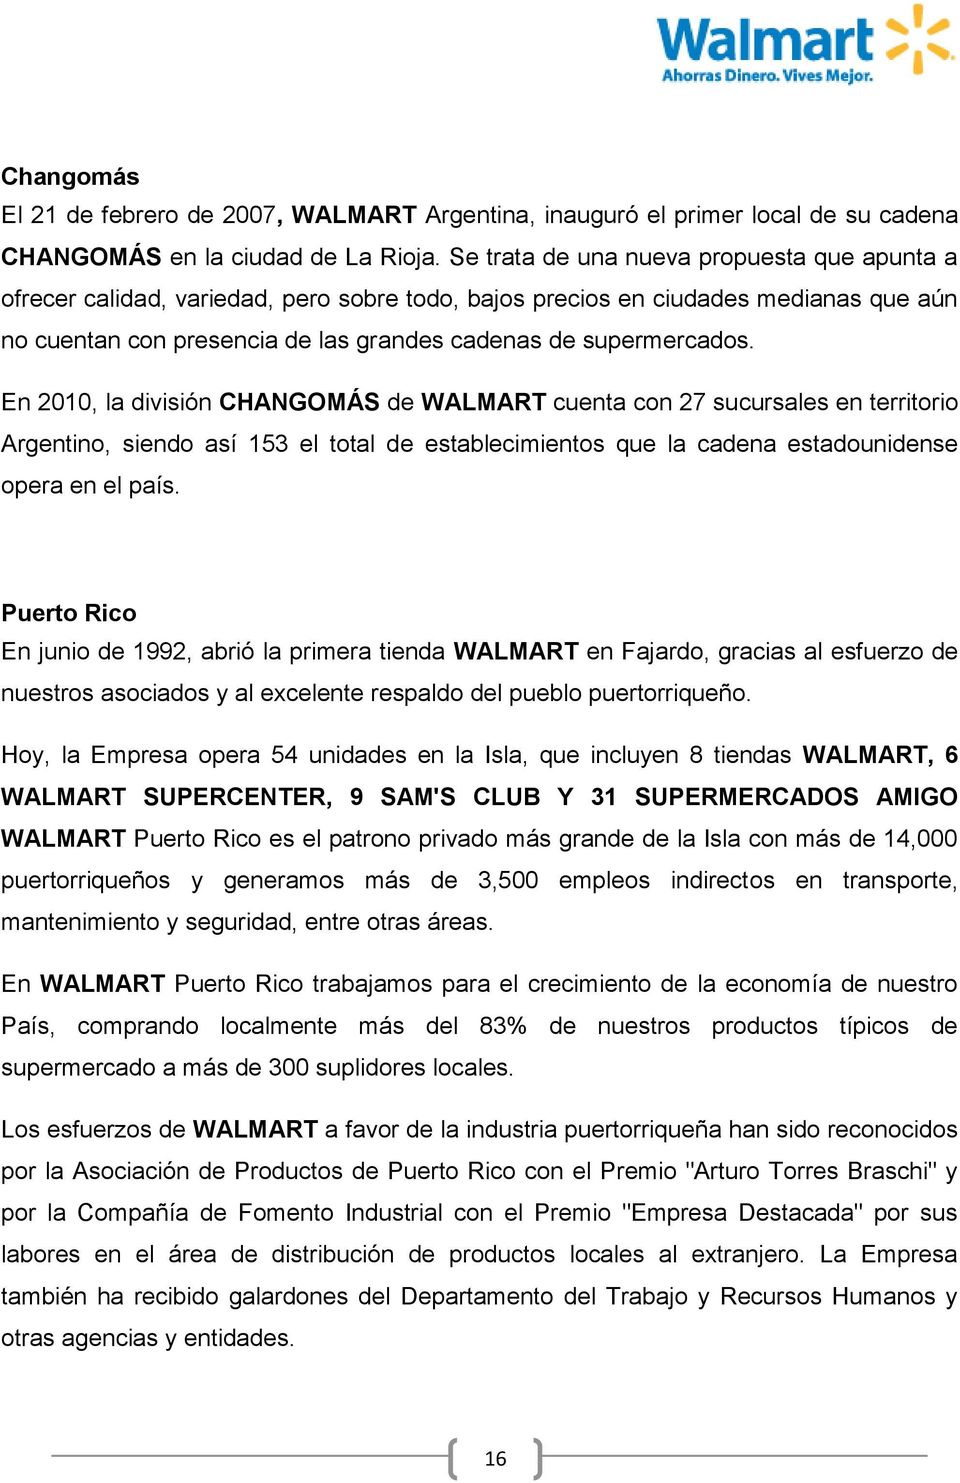 En 2010, la división CHANGOMÁS de WALMART cuenta con 27 sucursales en territorio Argentino, siendo así 153 el total de establecimientos que la cadena estadounidense opera en el país.